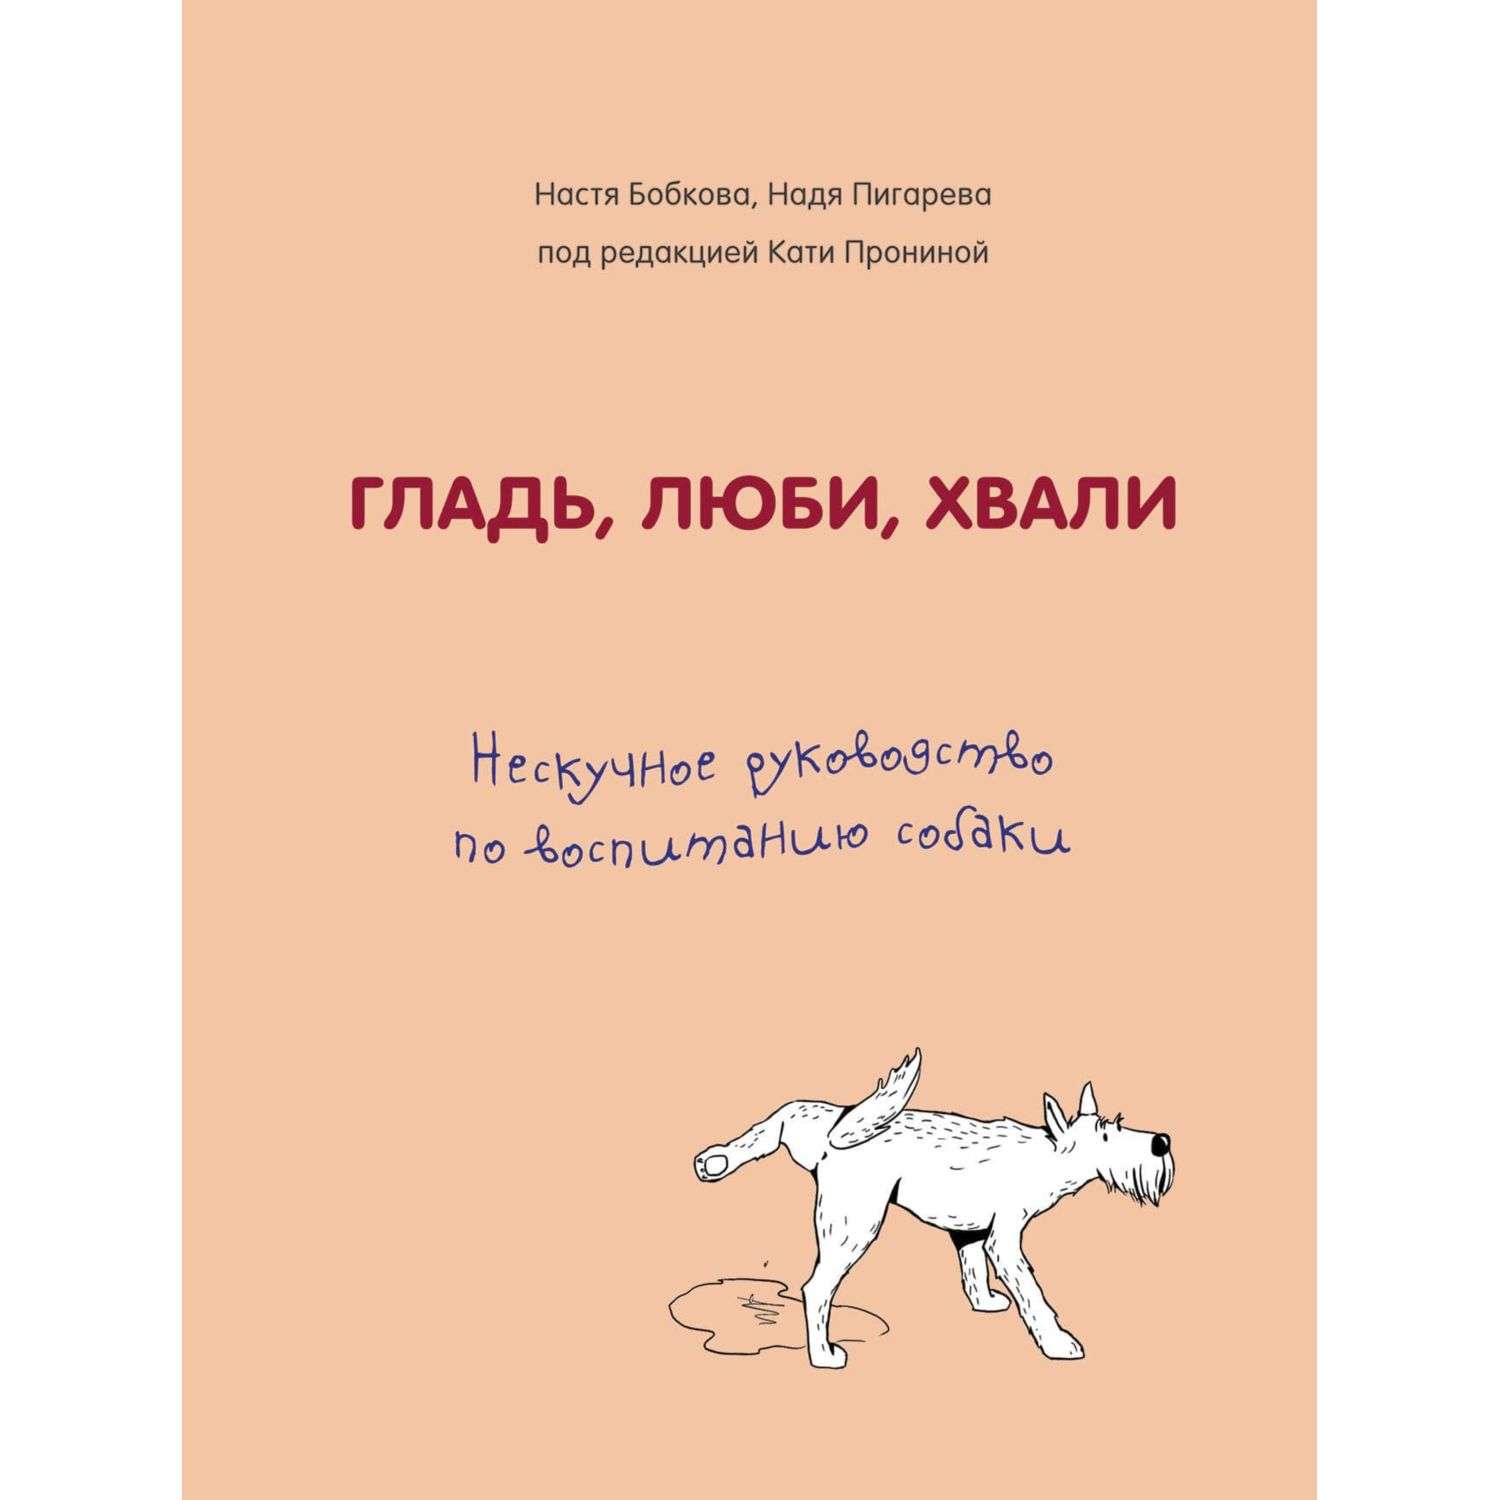 Книга БОМБОРА Гладь люби хвали Нескучное руководство по воспитанию собаки - фото 1